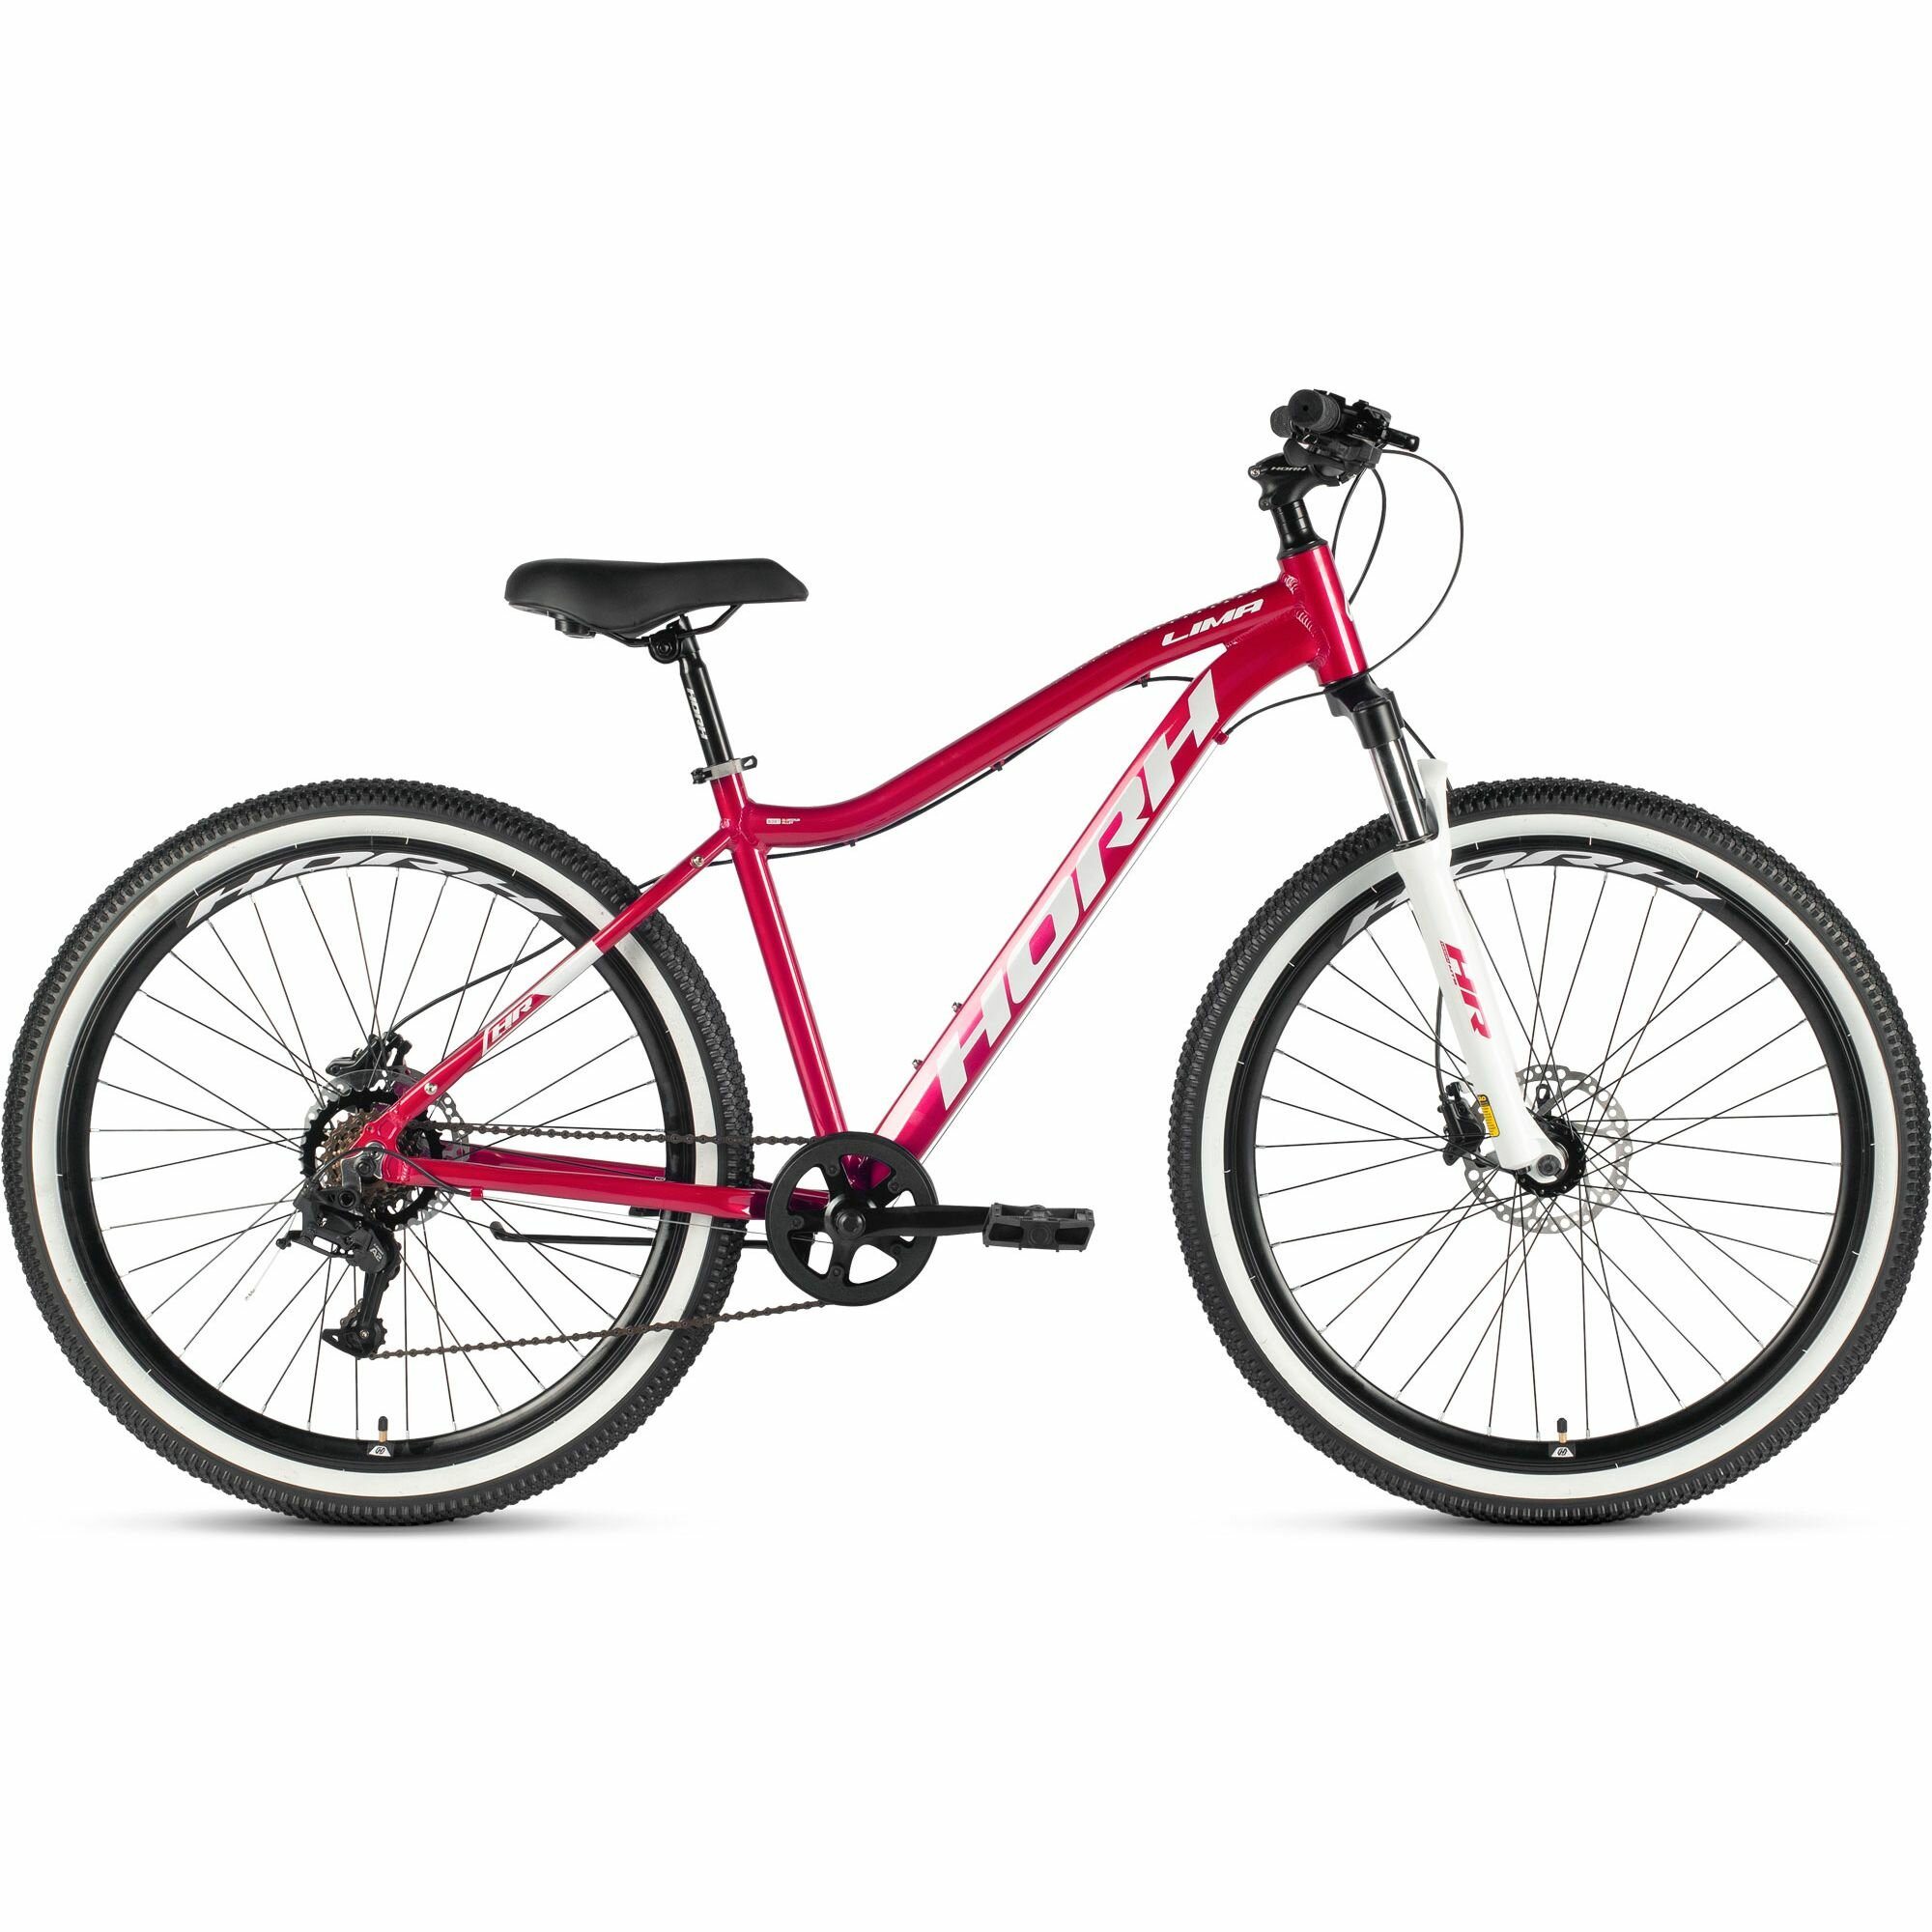 Велосипед горный HORH LIMA LHD 7.0 27.5 (2024), хардтейл, взрослый, женский, алюминиевая рама, оборудование L-Twoo, 9 скоростей, дисковые гидравлические тормоза, цвет Berry-White, розовый/белый цвет, размер рамы 15", для роста 160-170 см